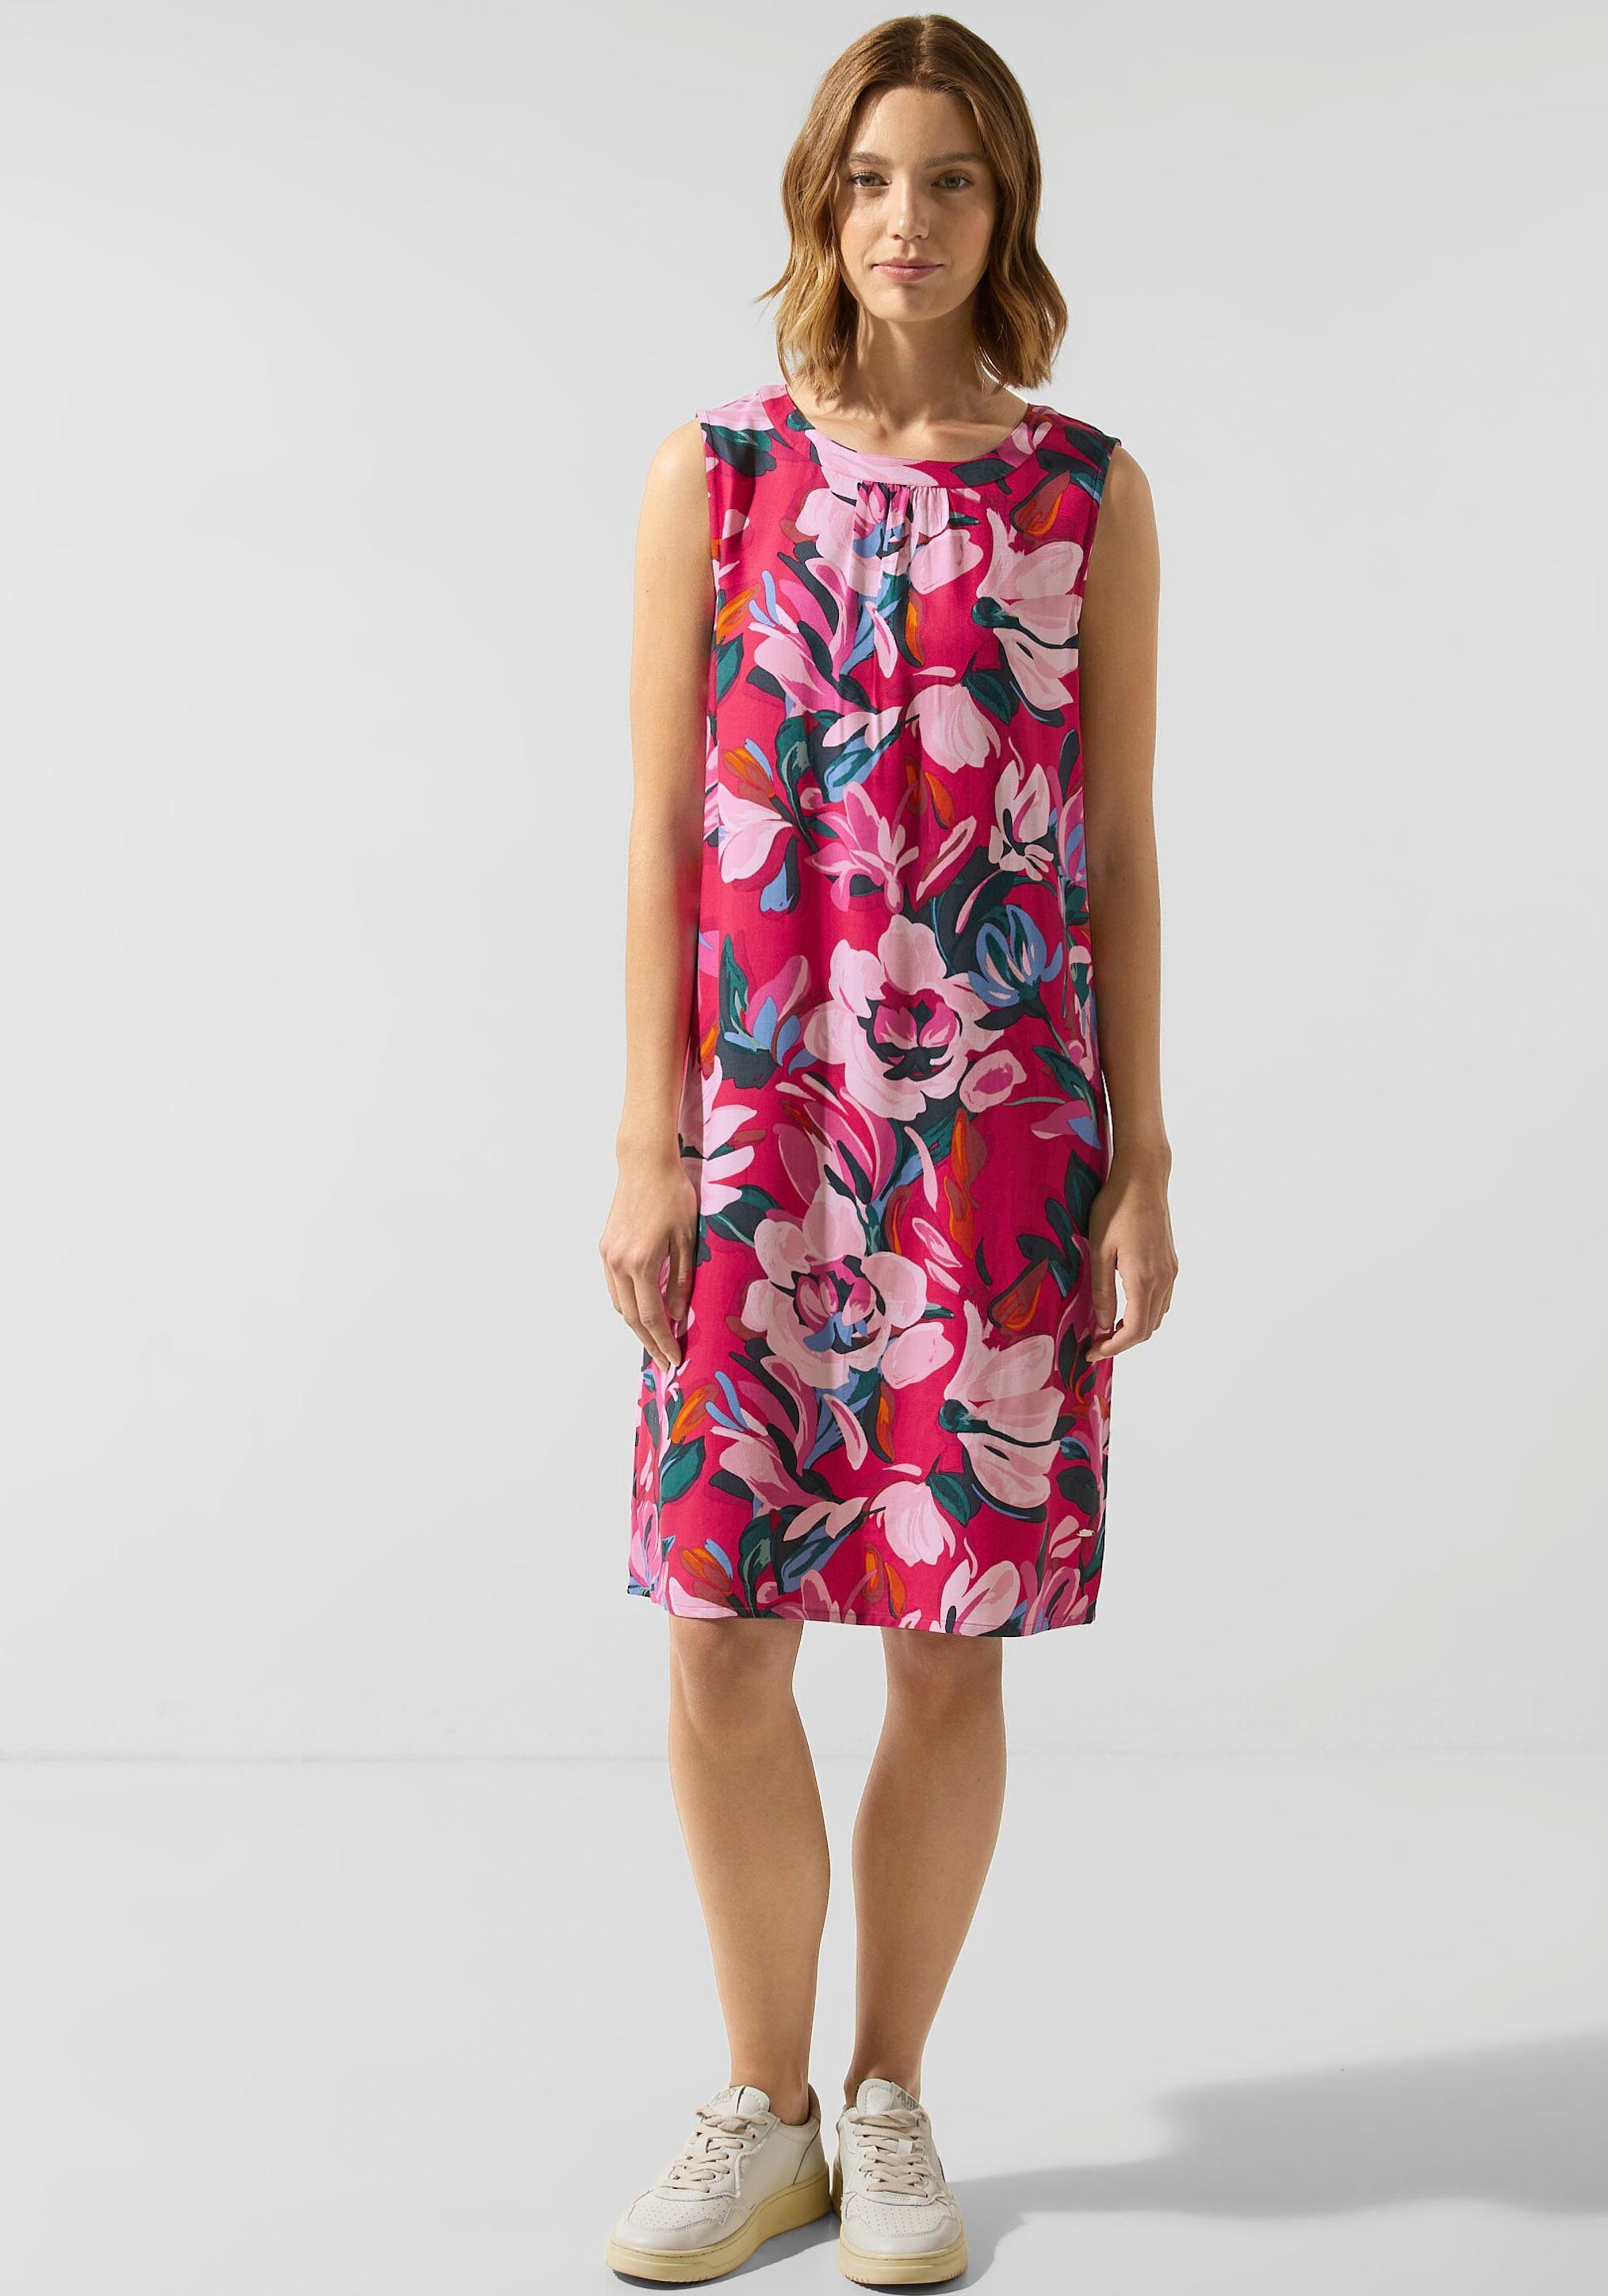 STREET ONE Sommerkleid mit einem Silhouette eine Gerader Muster, Schnitt Knielänge sorgt für entspannende in floralen schönen